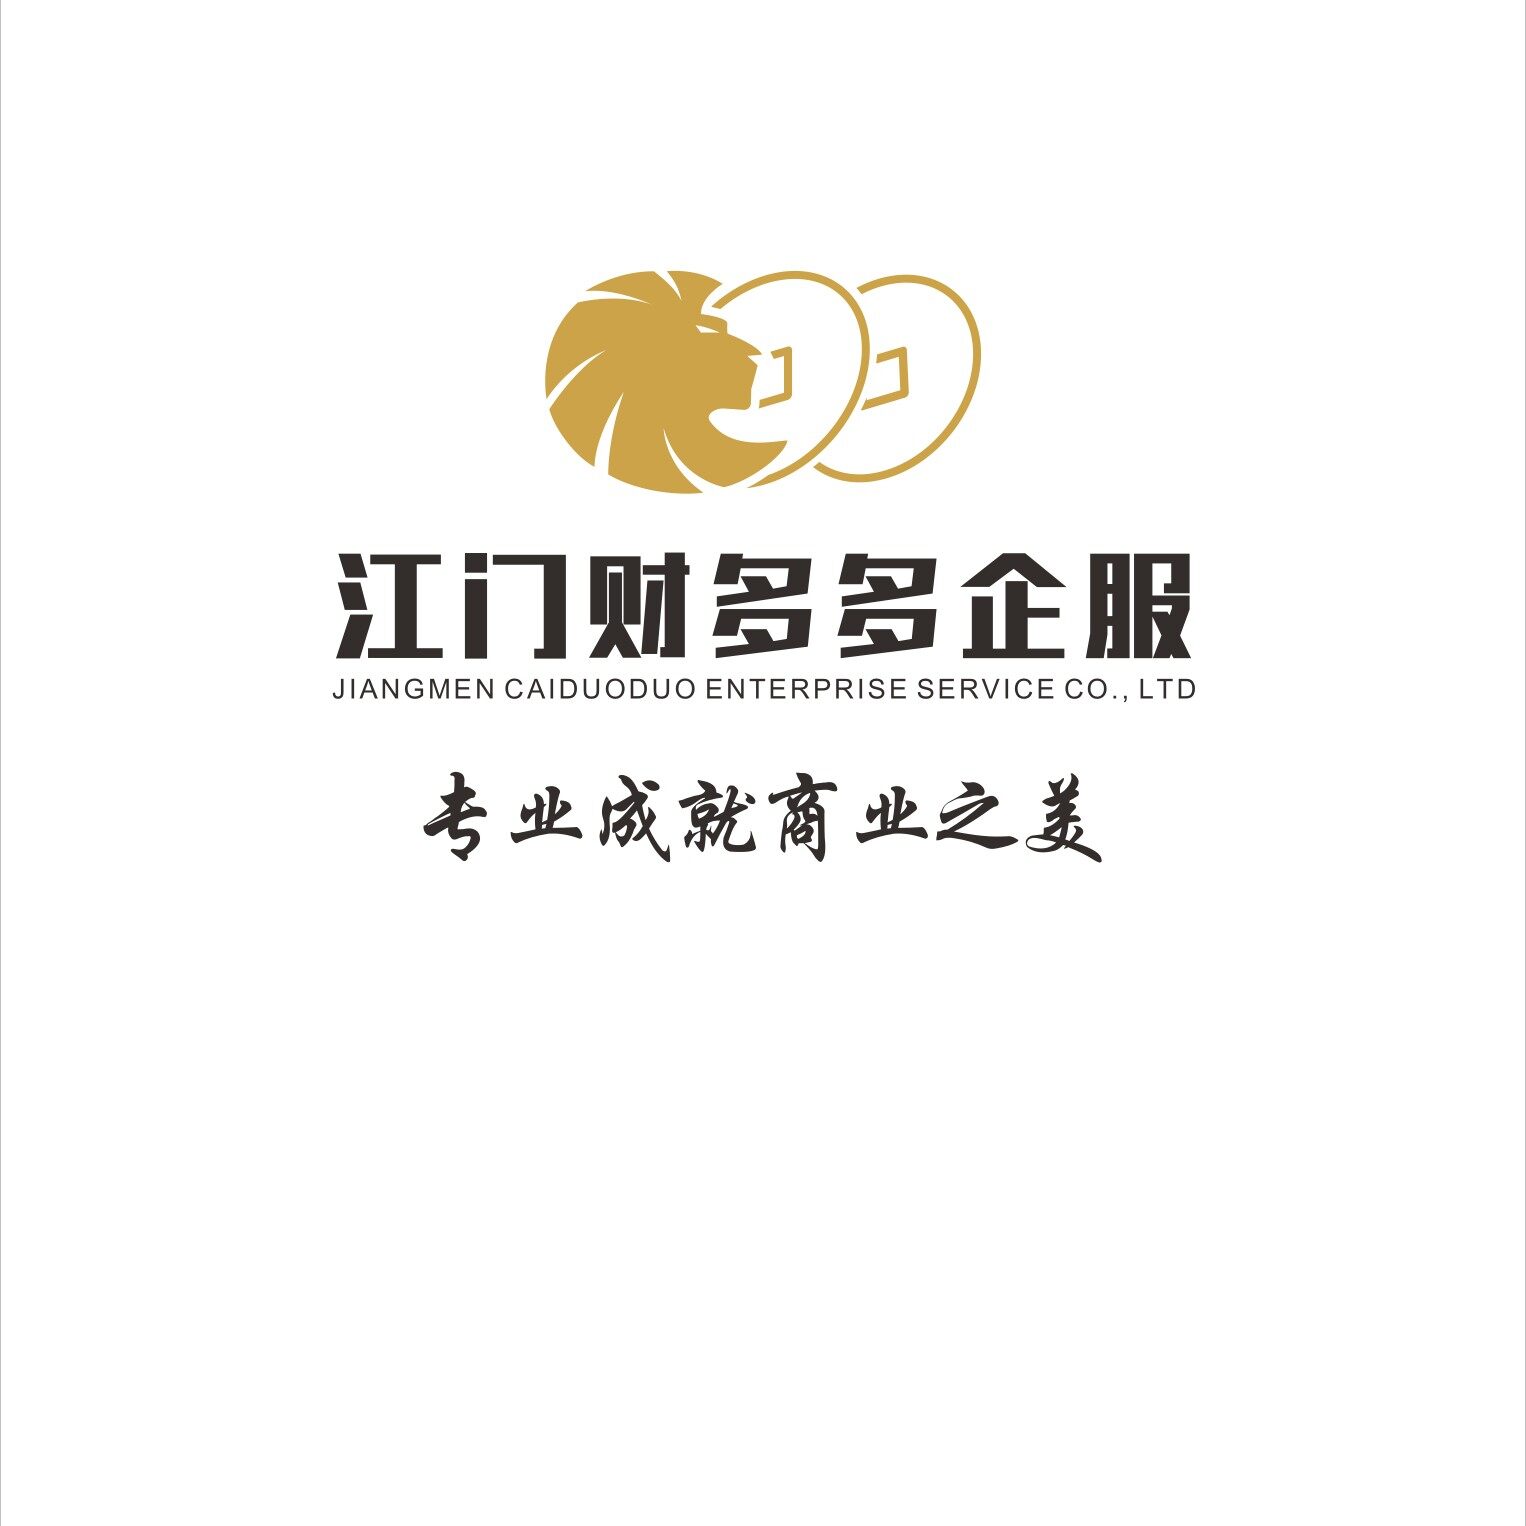 江门财多多企业服务有限公司logo